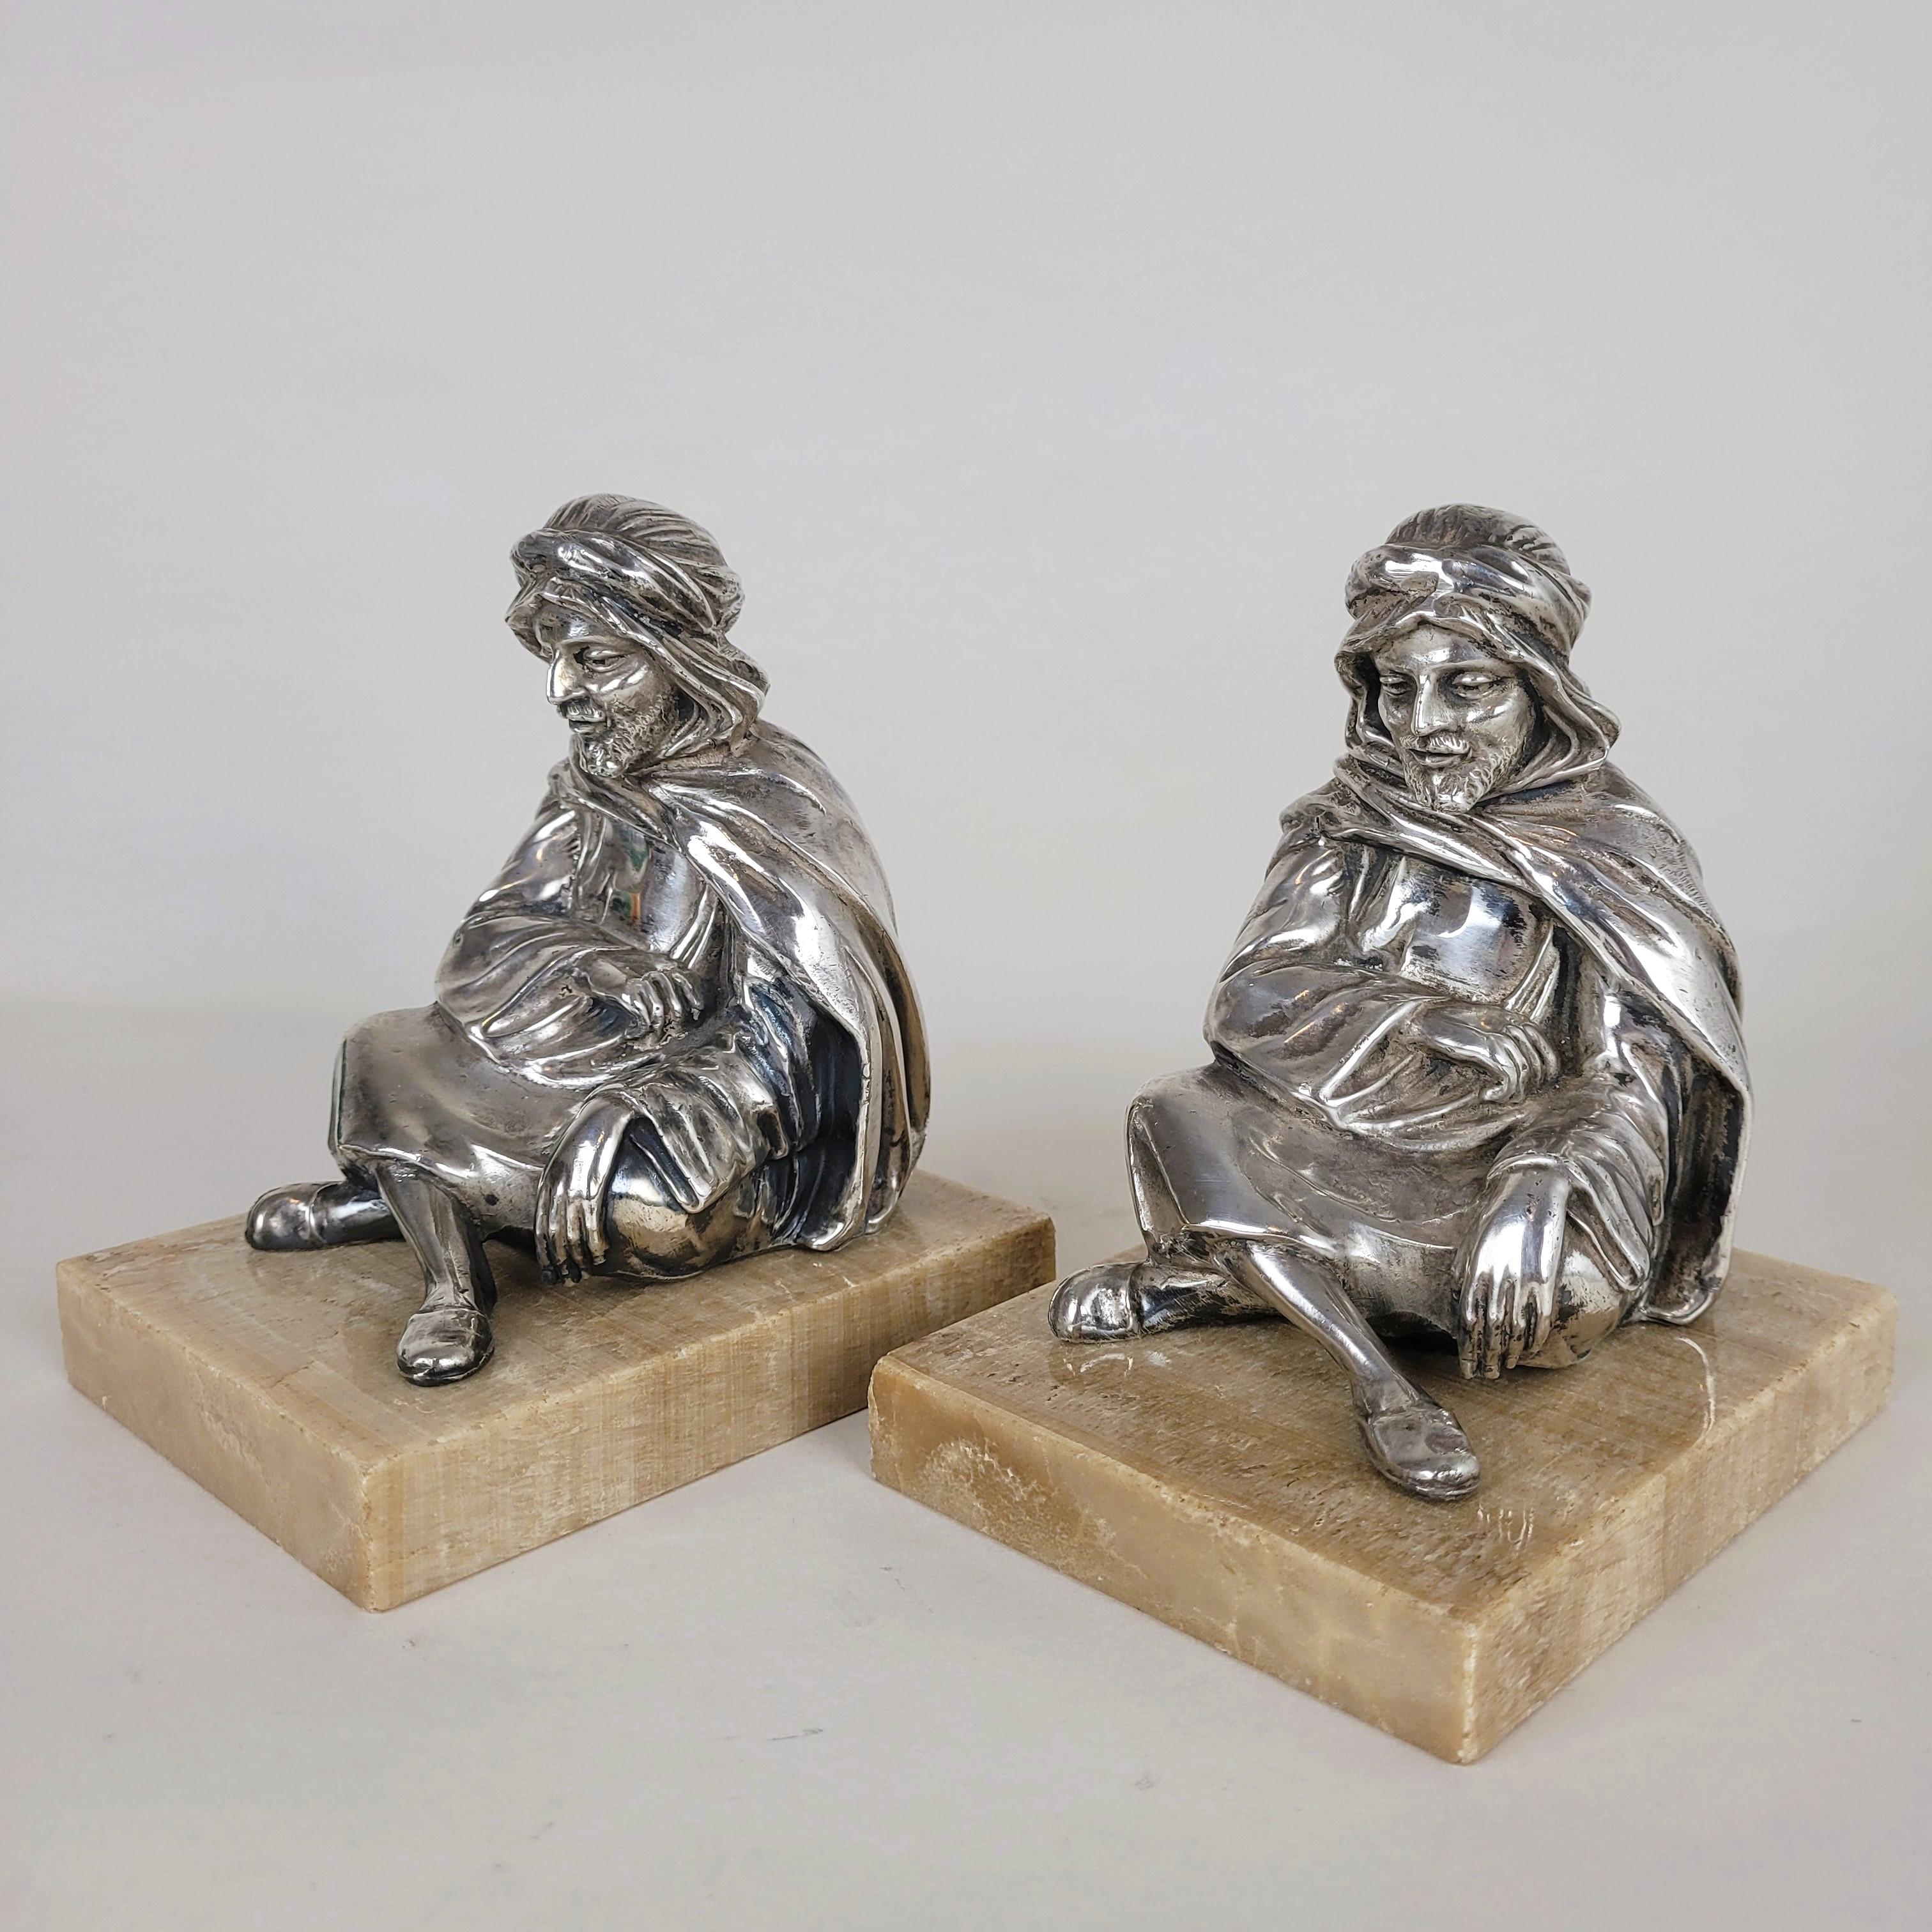 Zwei Buchstützen, die sitzende Orientalen darstellen, die in ihre Tücher gehüllt sind.

Figuren aus versilbertem Metall, auf einem Onyxsockel

Guter Allgemeinzustand, winzige Absplitterungen am Marmor

Höhe 13.5 cm
9.5 x 12.5 cm